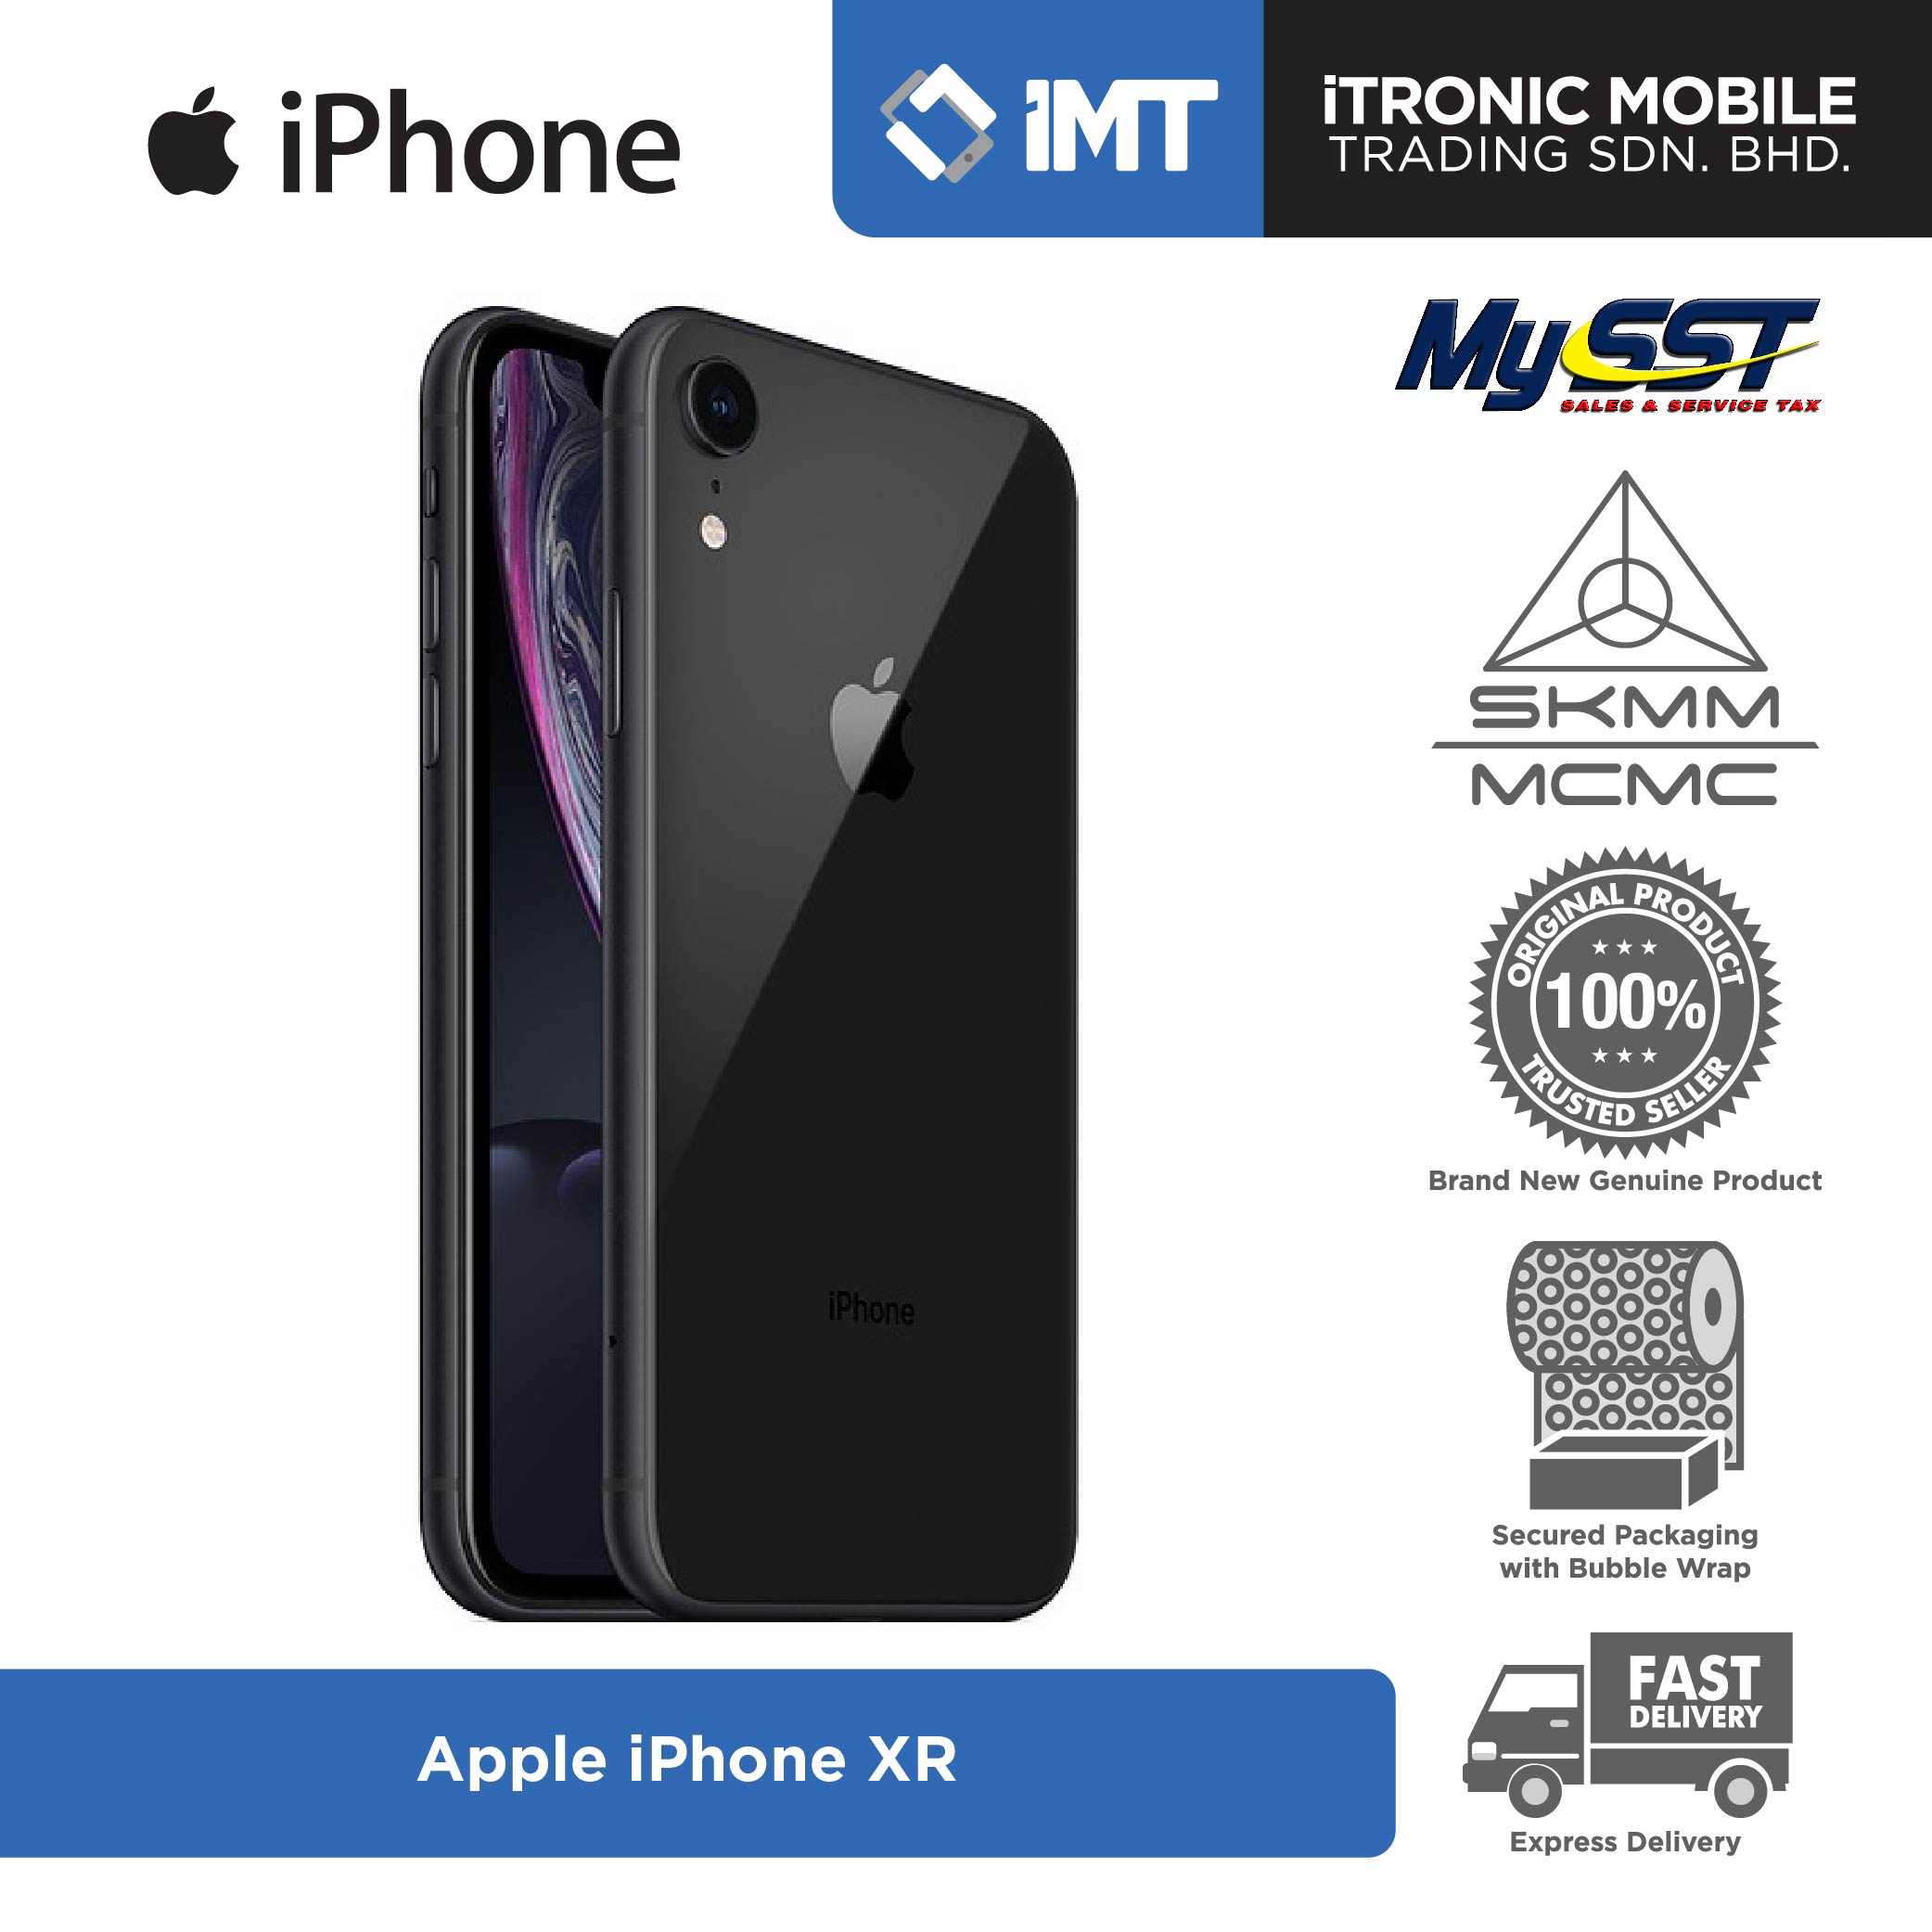 Iphone xr price in malaysia